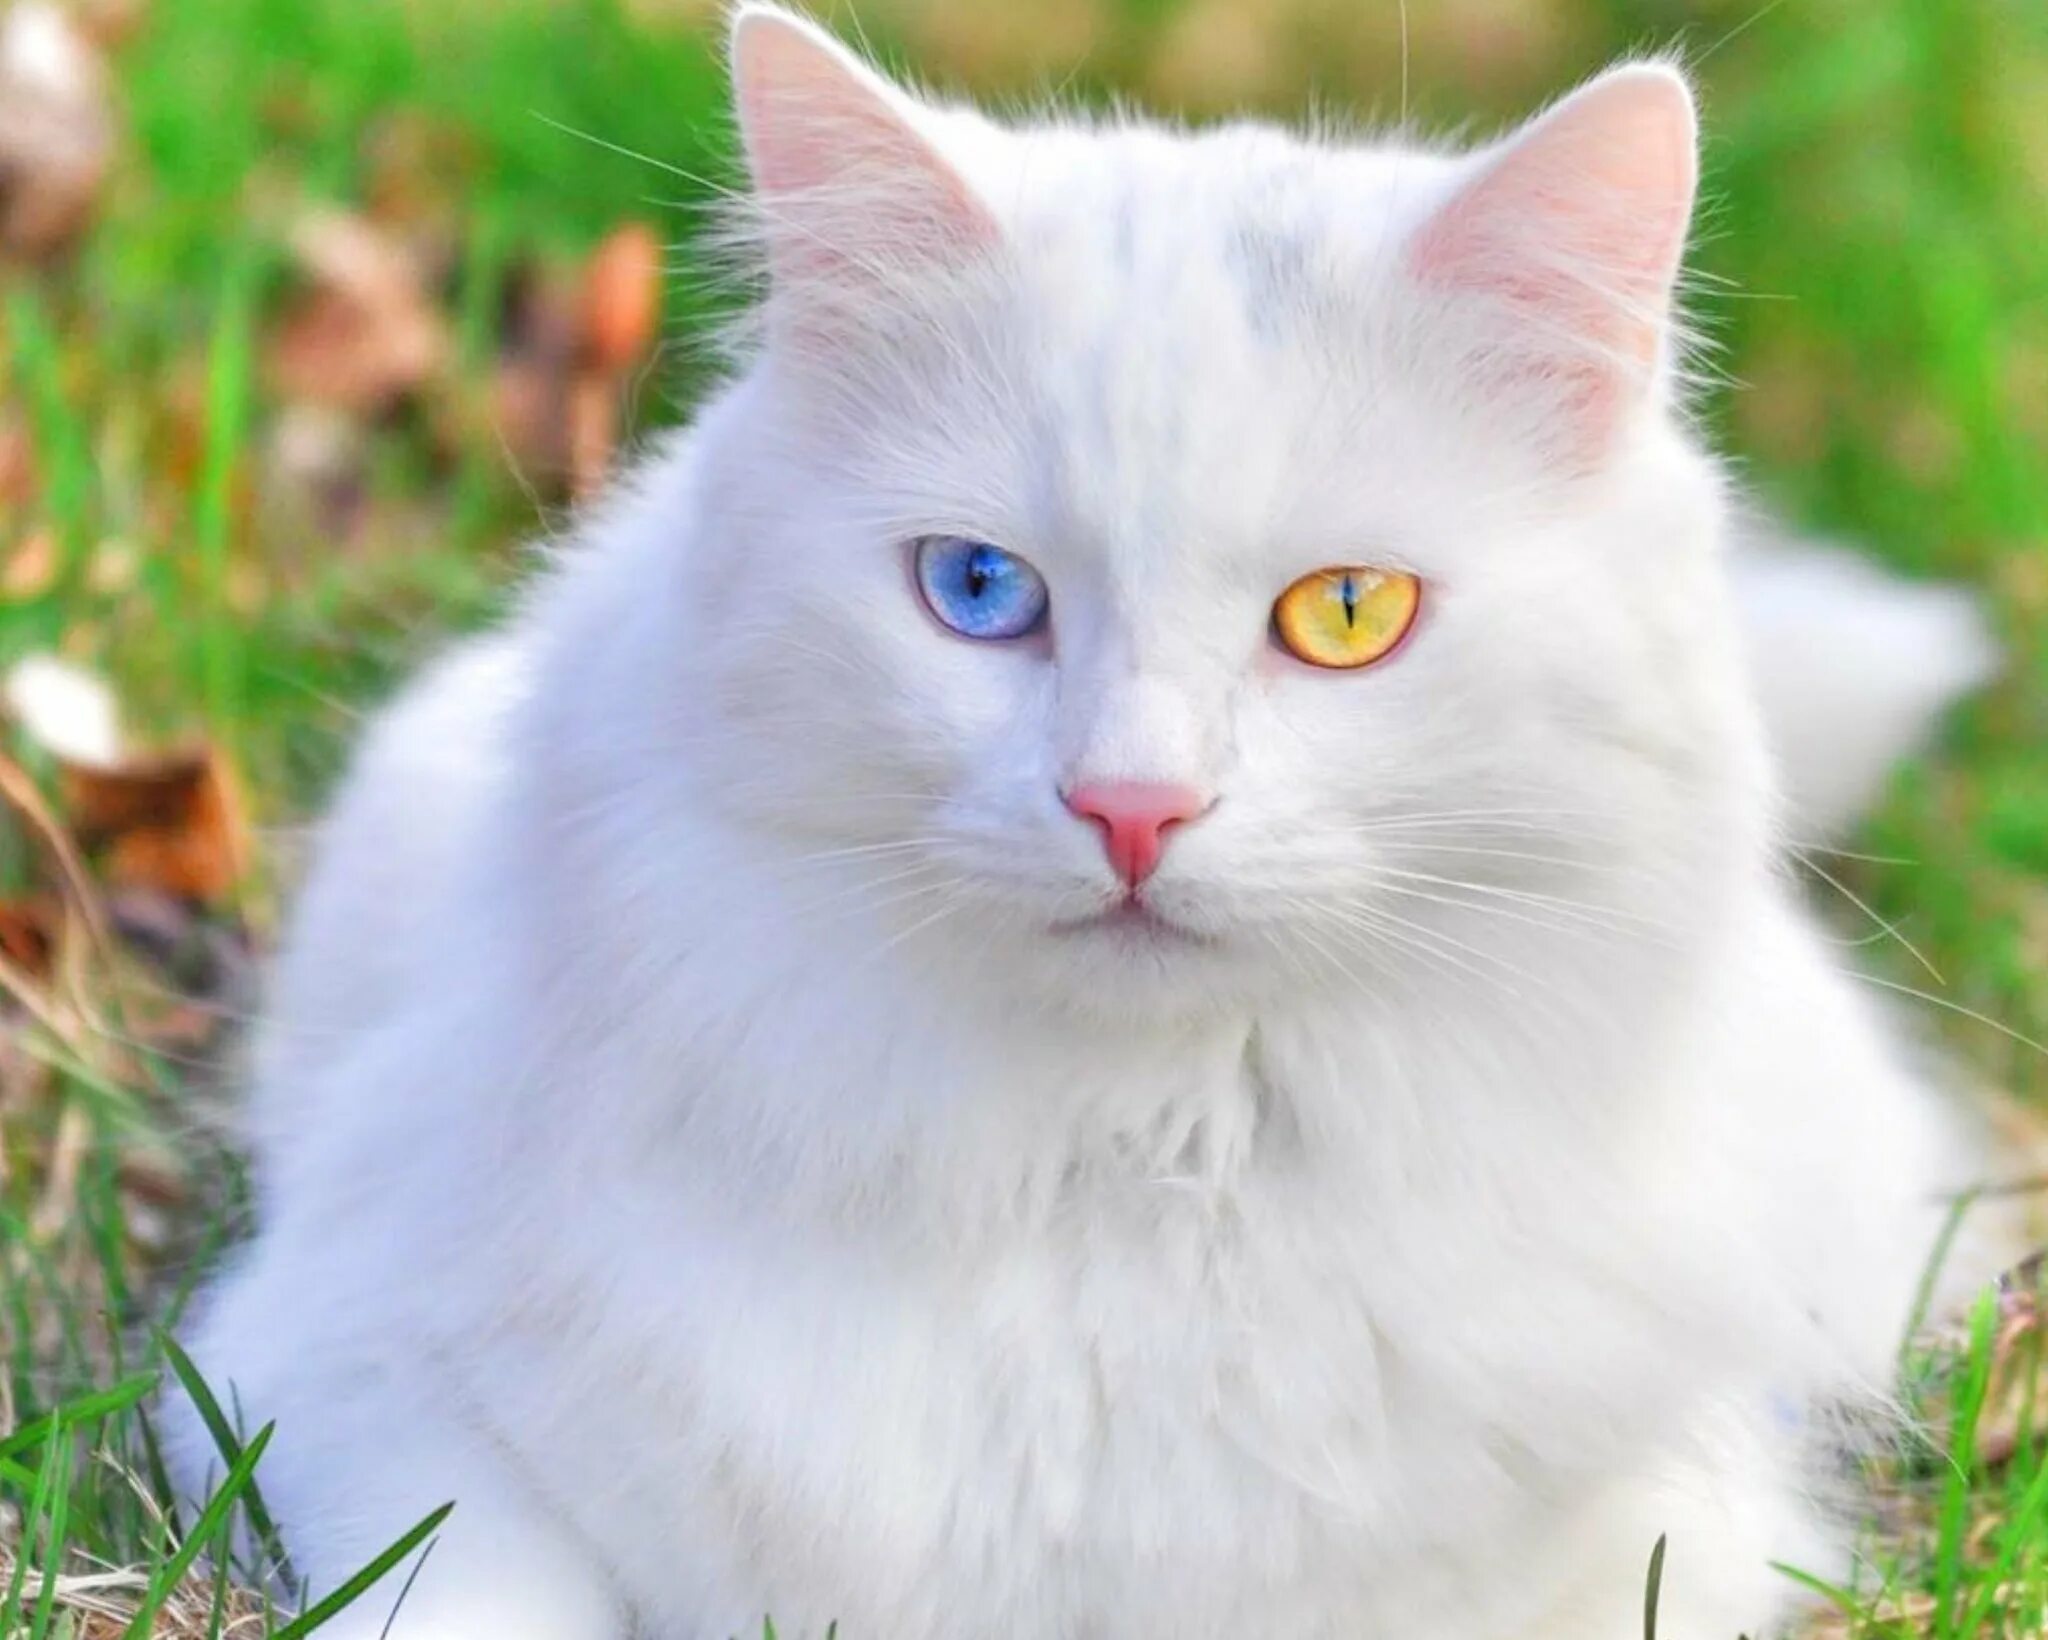 Как называется белая порода кошек. Турецкий Ван кедиси. Турецкий Ван кедиси белый. Турецкий Ван (van Kedisi) кошка. Турецкая ангора биколор.